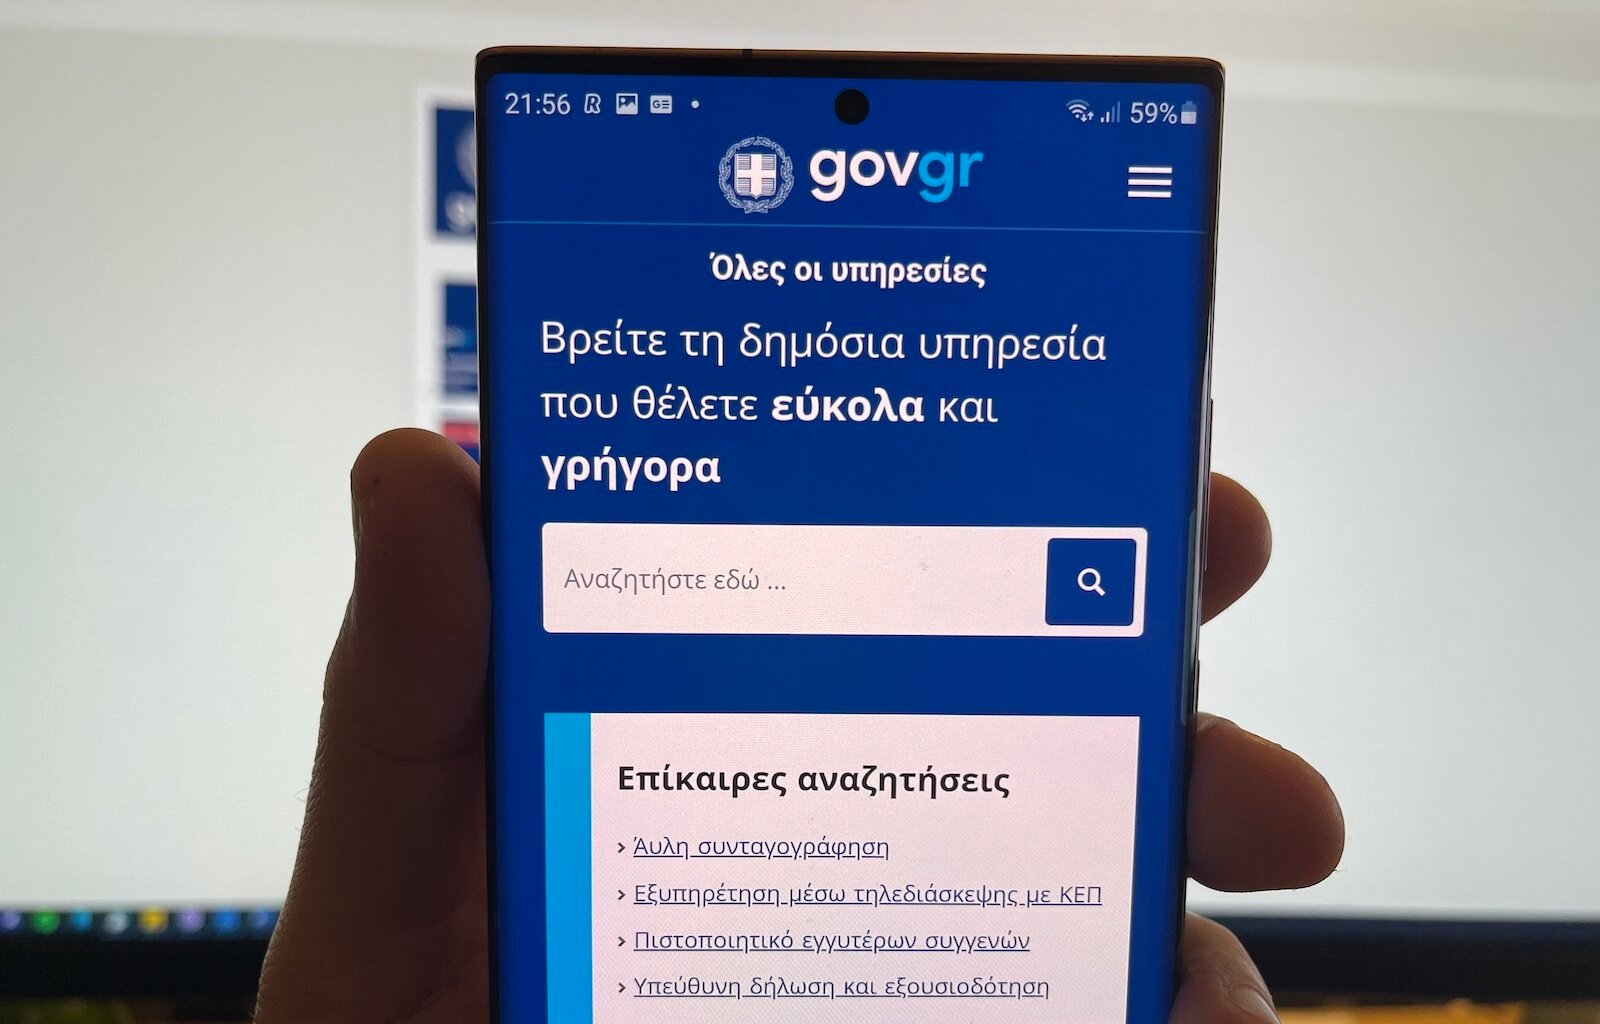 Ξεκινά η λειτουργία του Ψηφιακού Φακέλου Μεταβίβασης Ακινήτων μέσω gov.gr